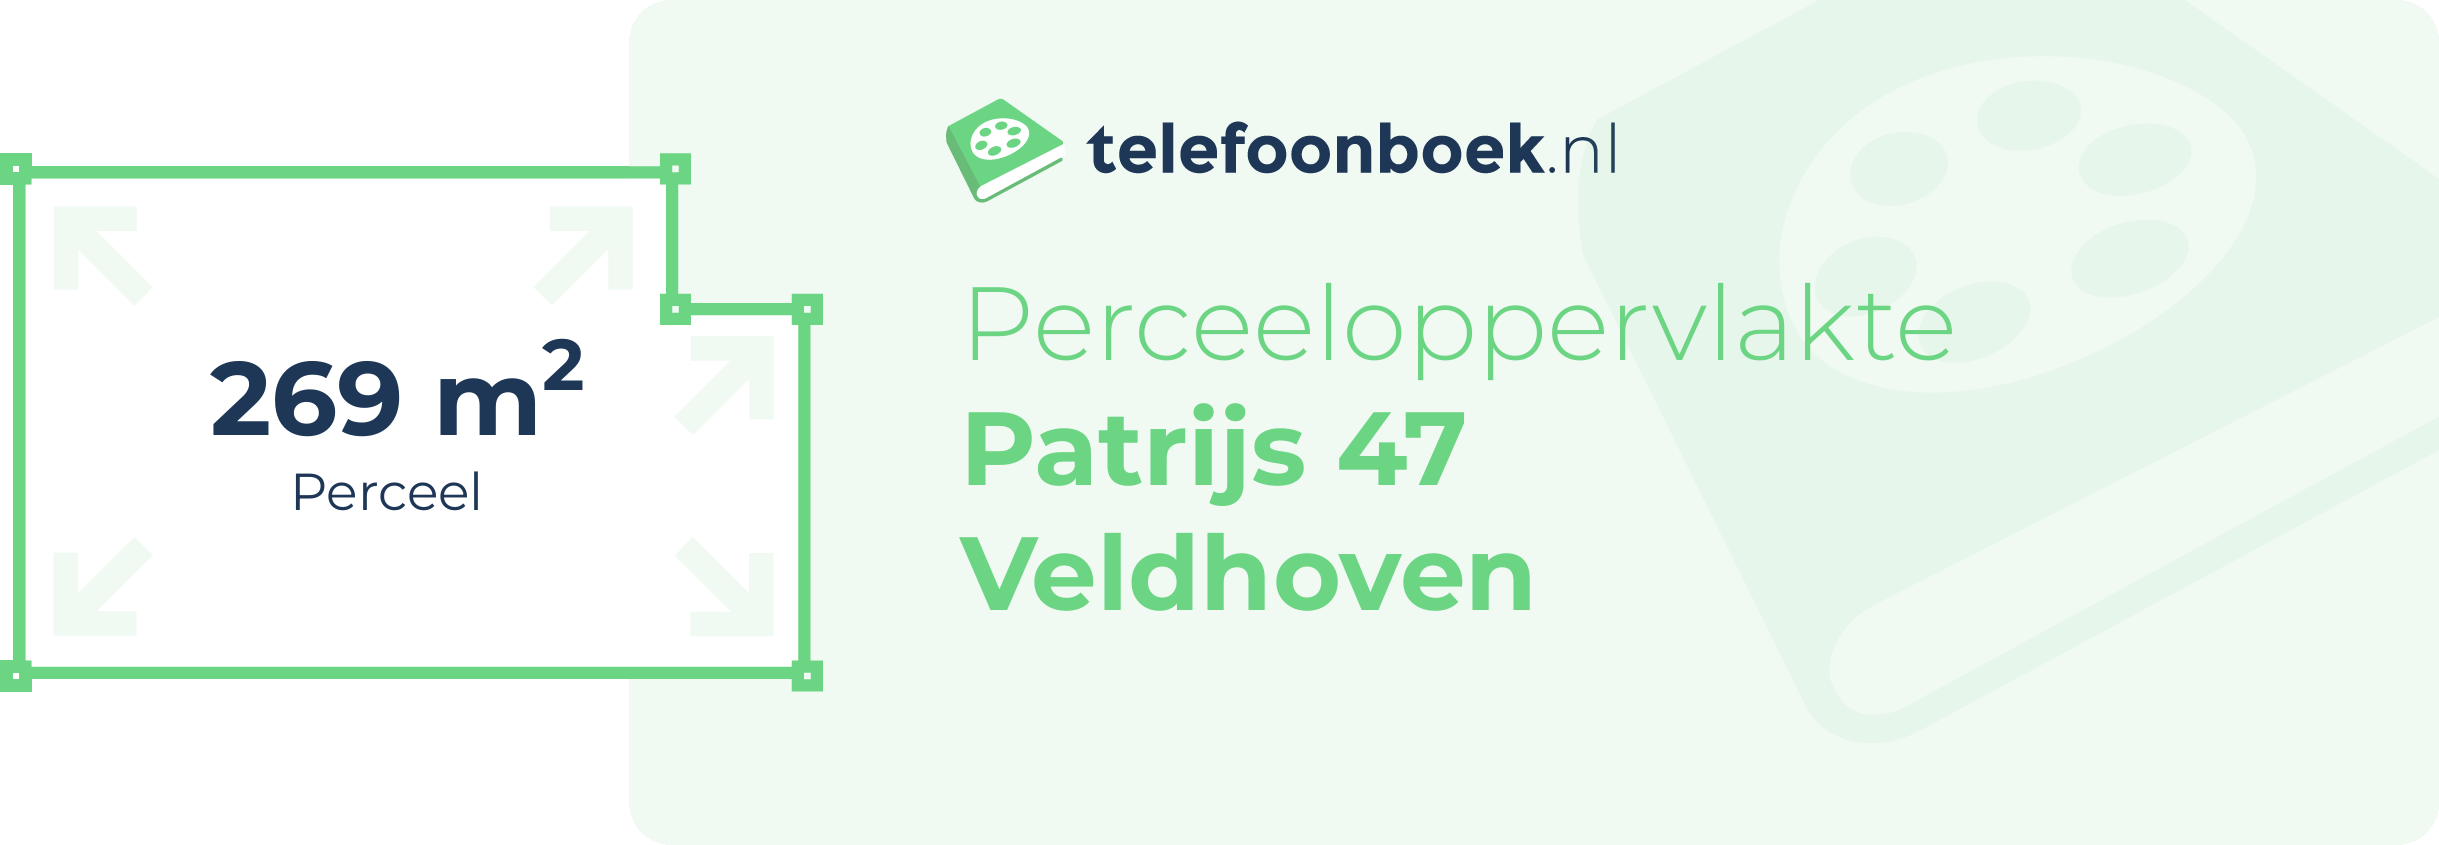 Perceeloppervlakte Patrijs 47 Veldhoven